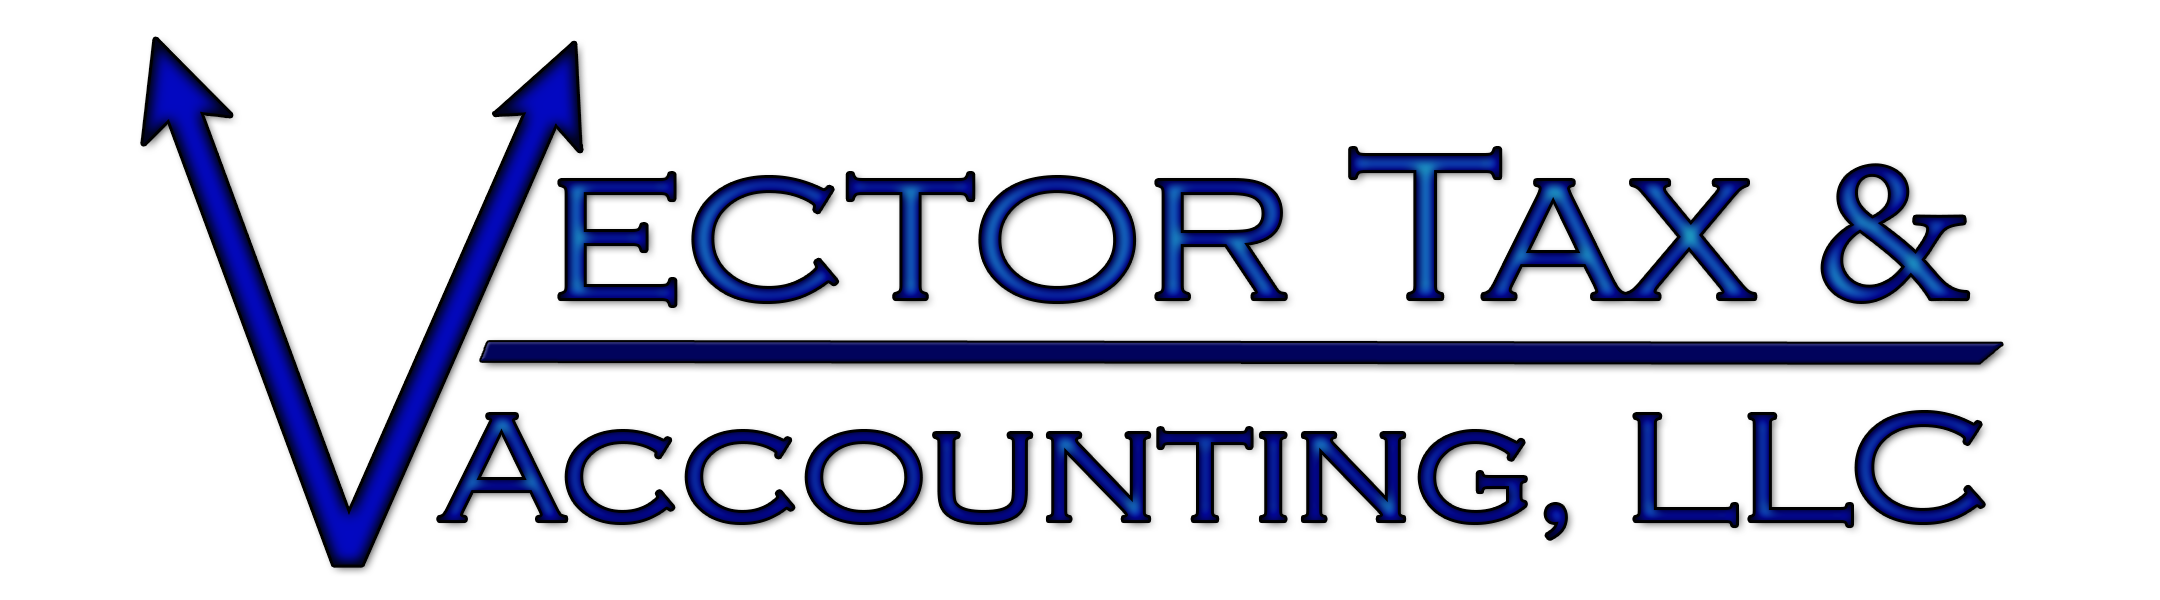 Vector_logo.png